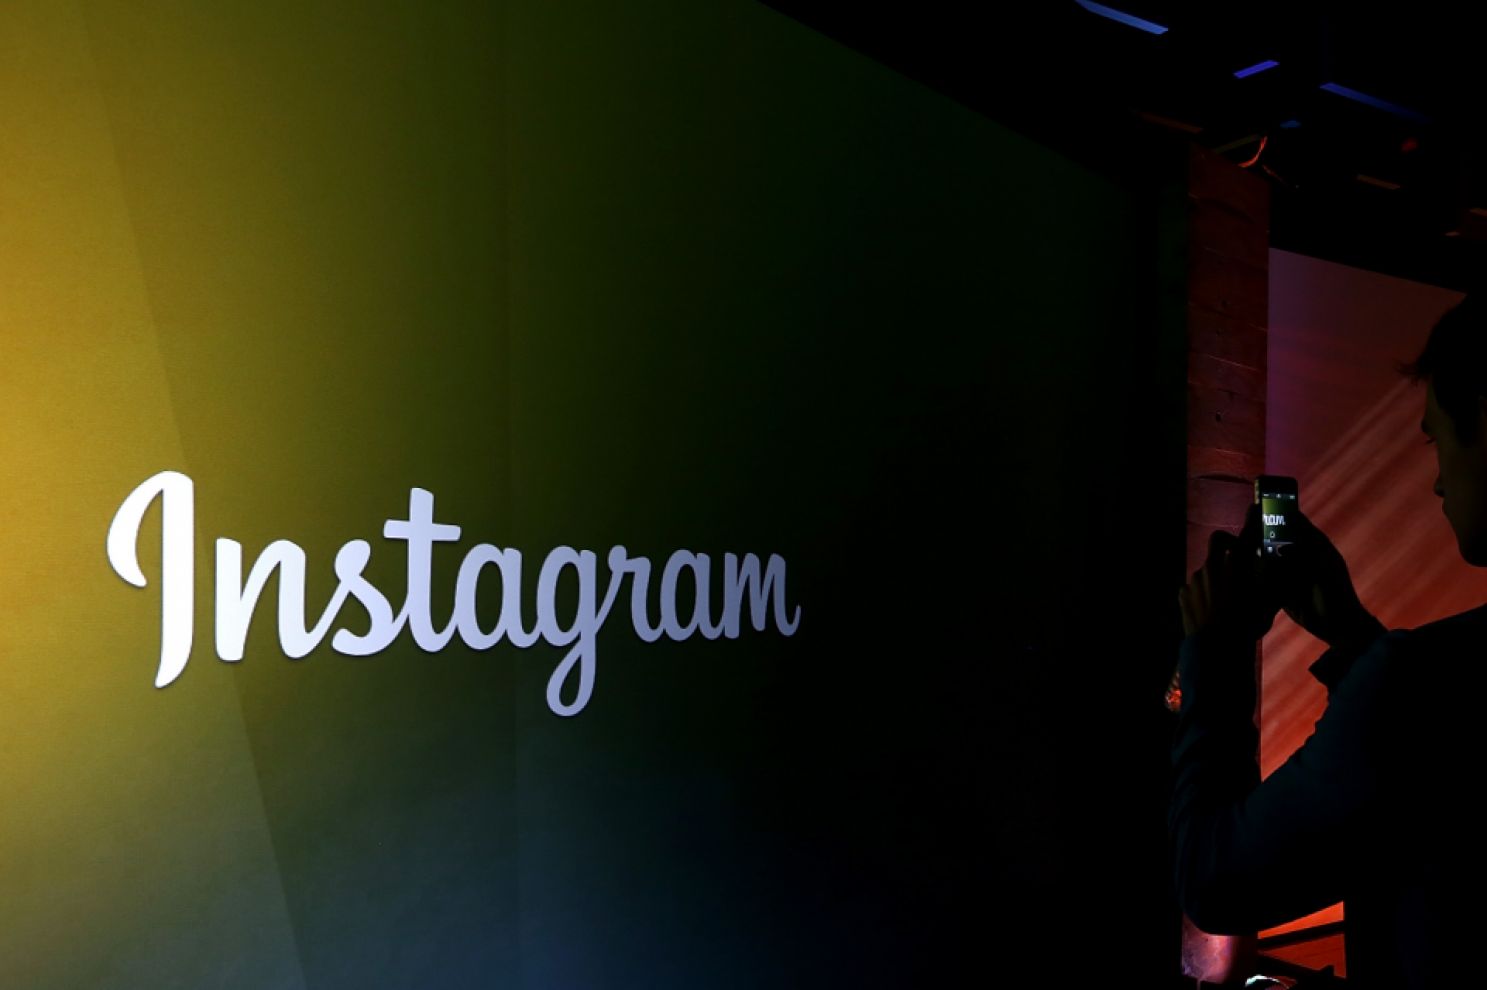 Οι χρήστες του Instagram ξεπέρασαν τα 600 εκατομμύρια